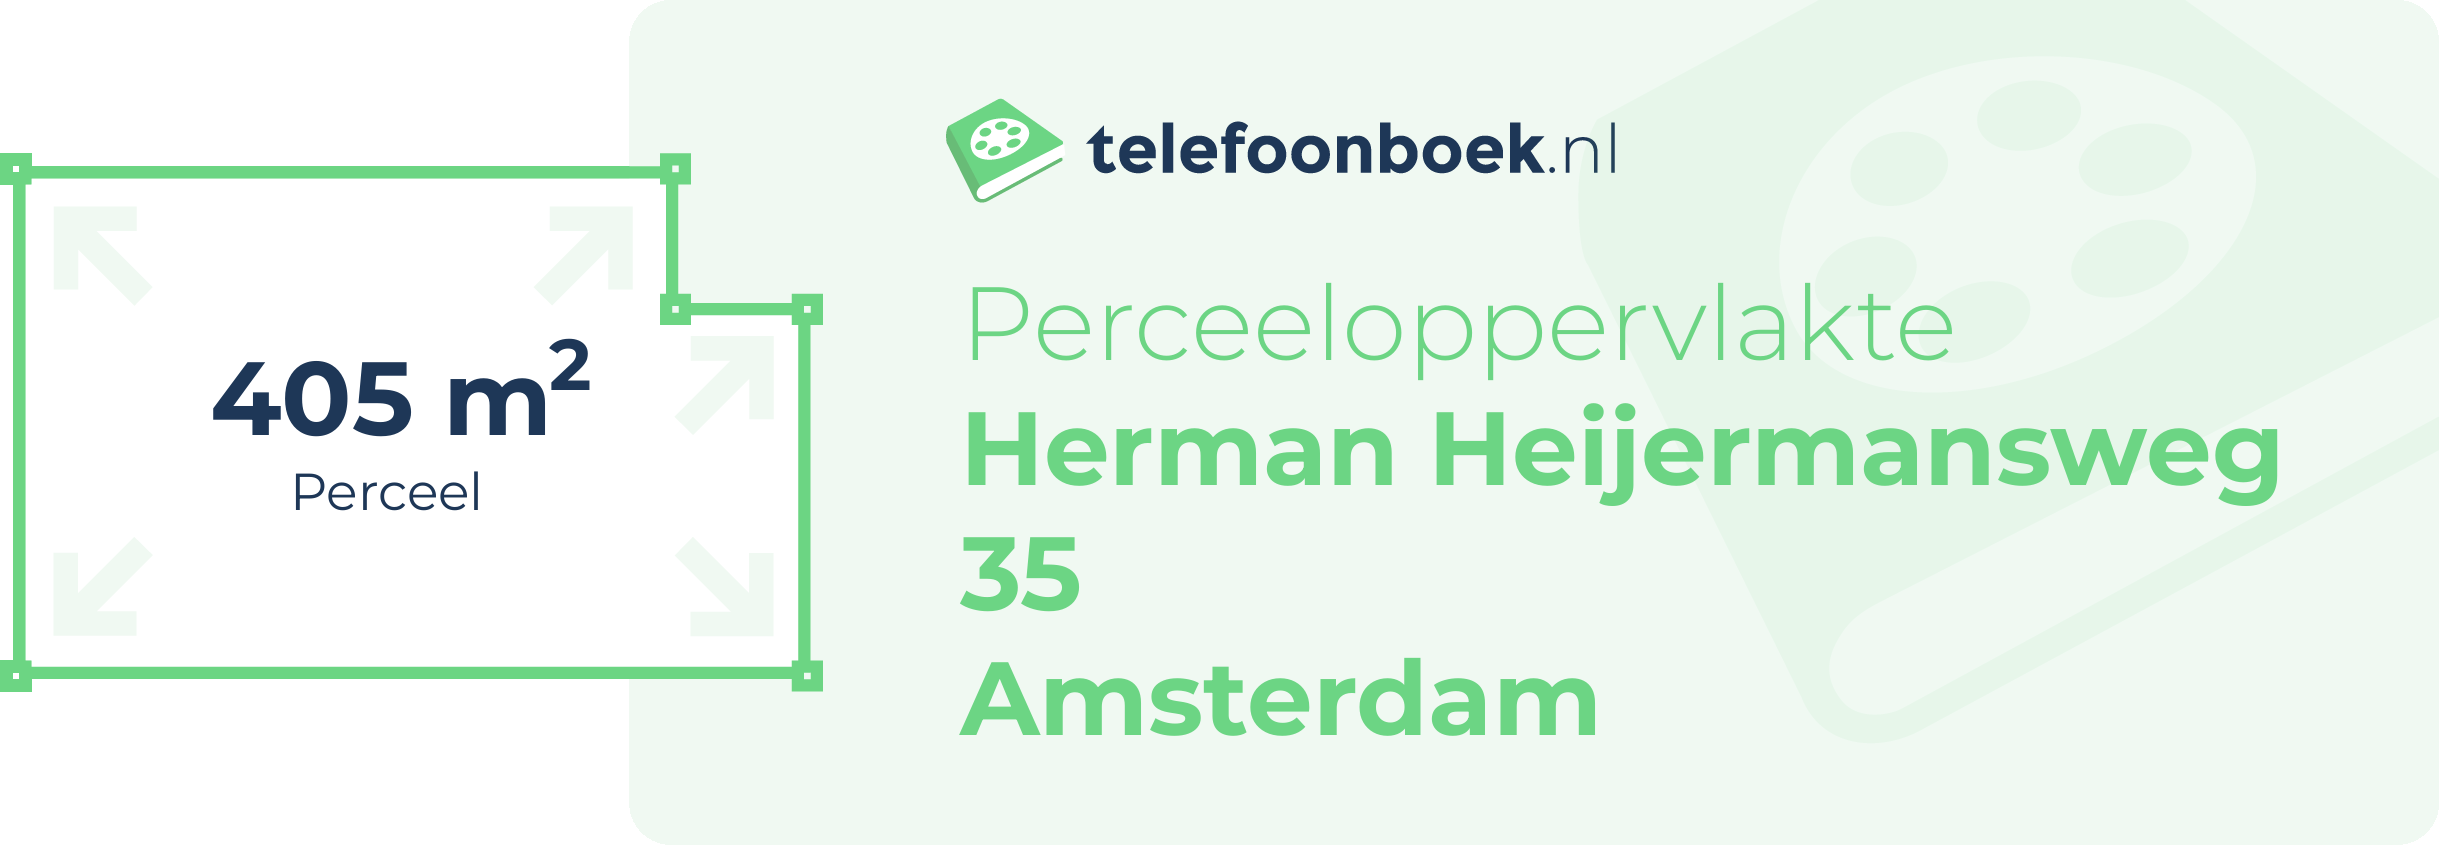 Perceeloppervlakte Herman Heijermansweg 35 Amsterdam